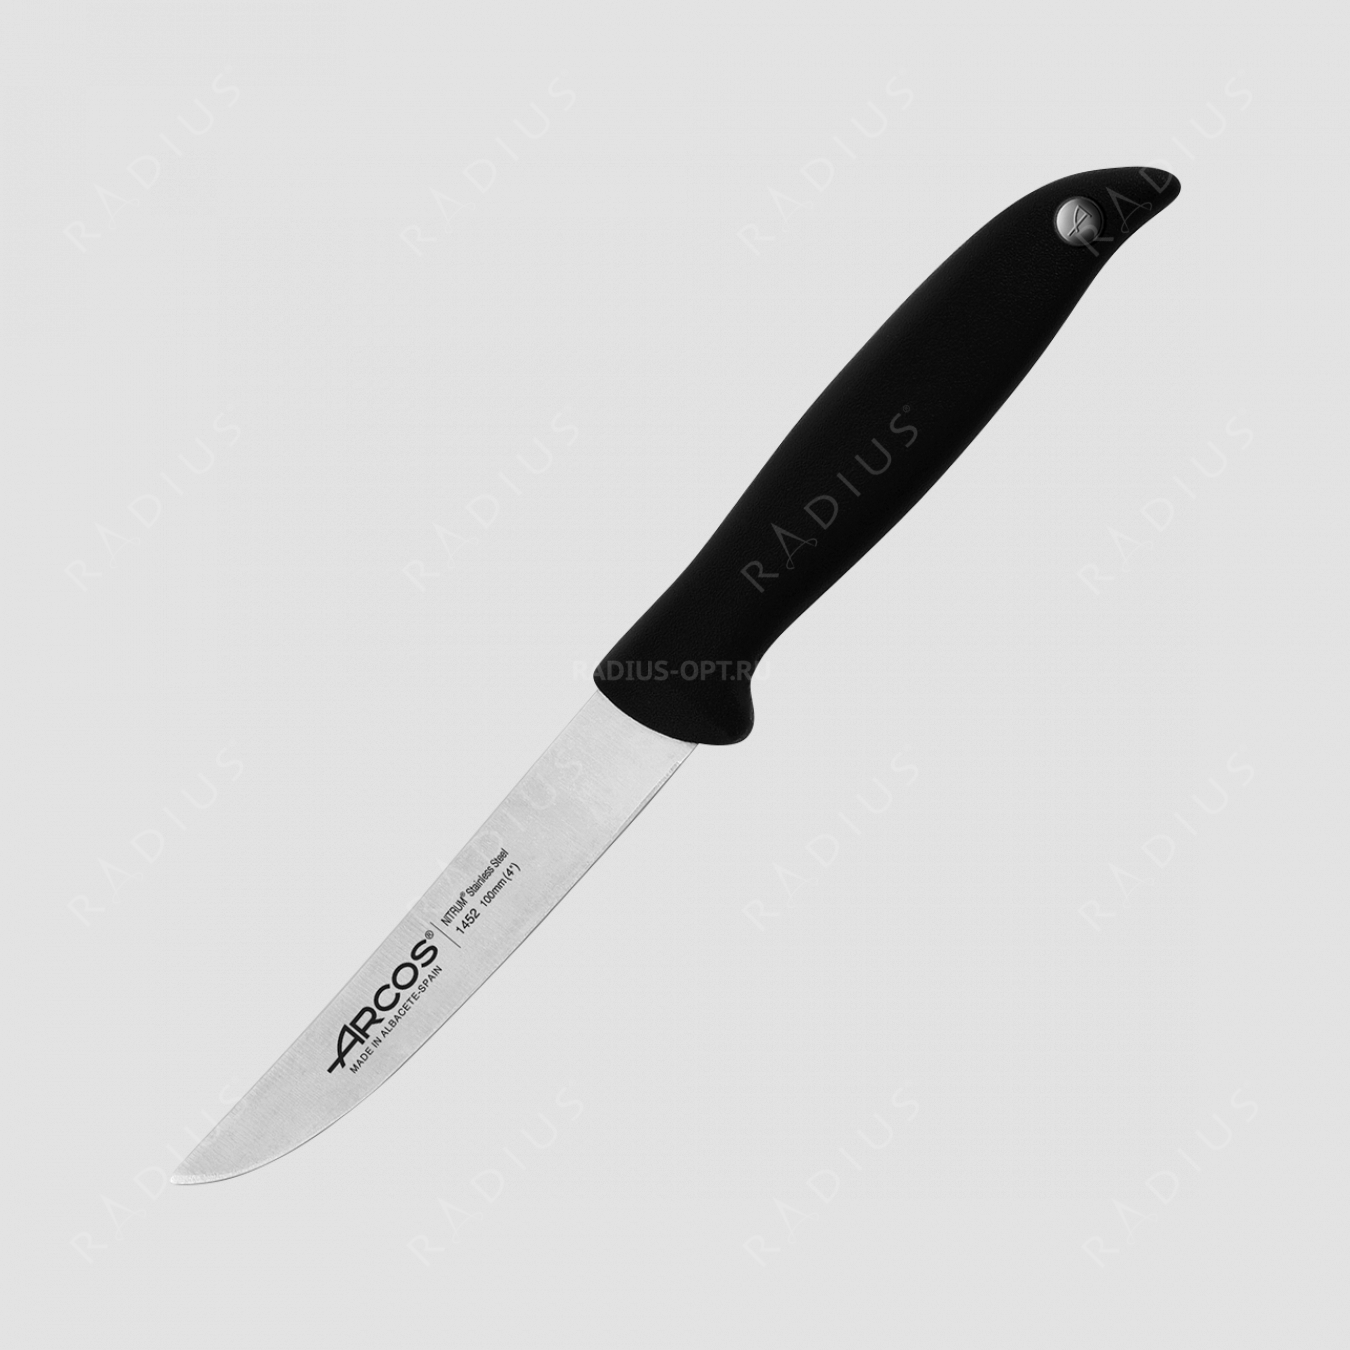 Нож кухонный для чистки 10 см, серия Menorca, ARCOS, Испания